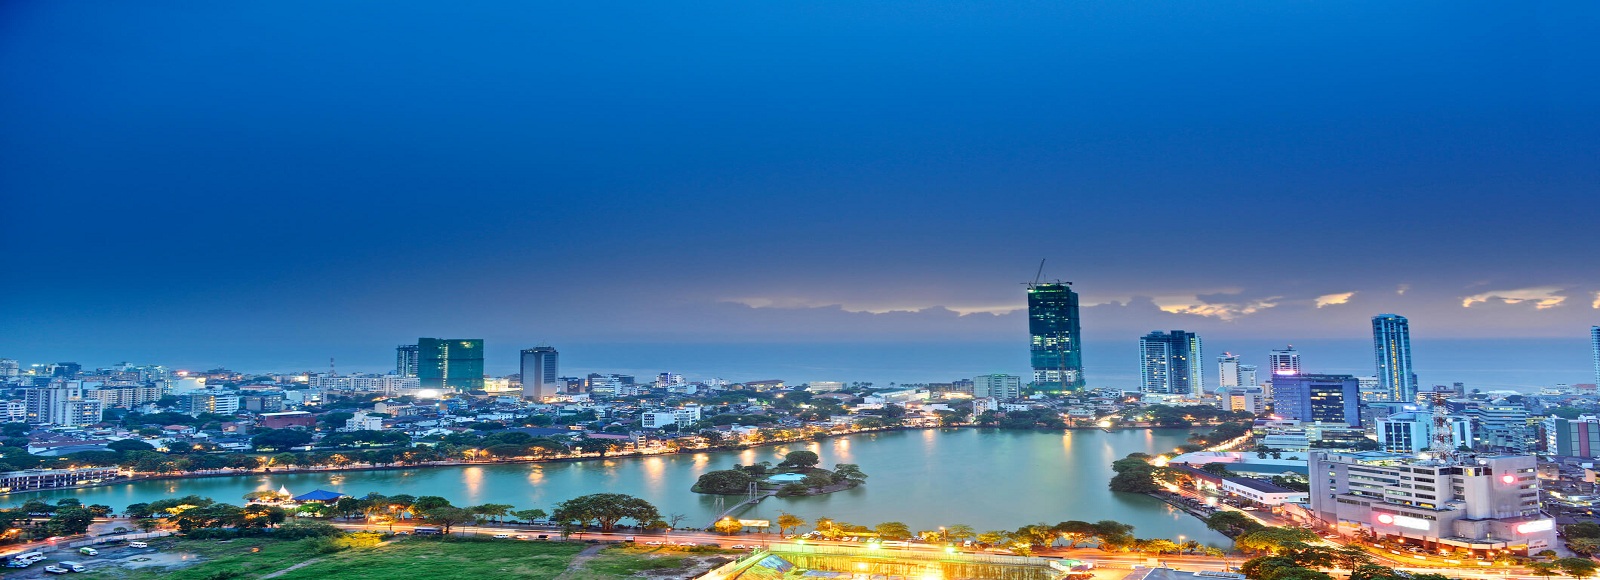 Ofertas de Traslados en Colombo. Traslados económicos en Colombo 